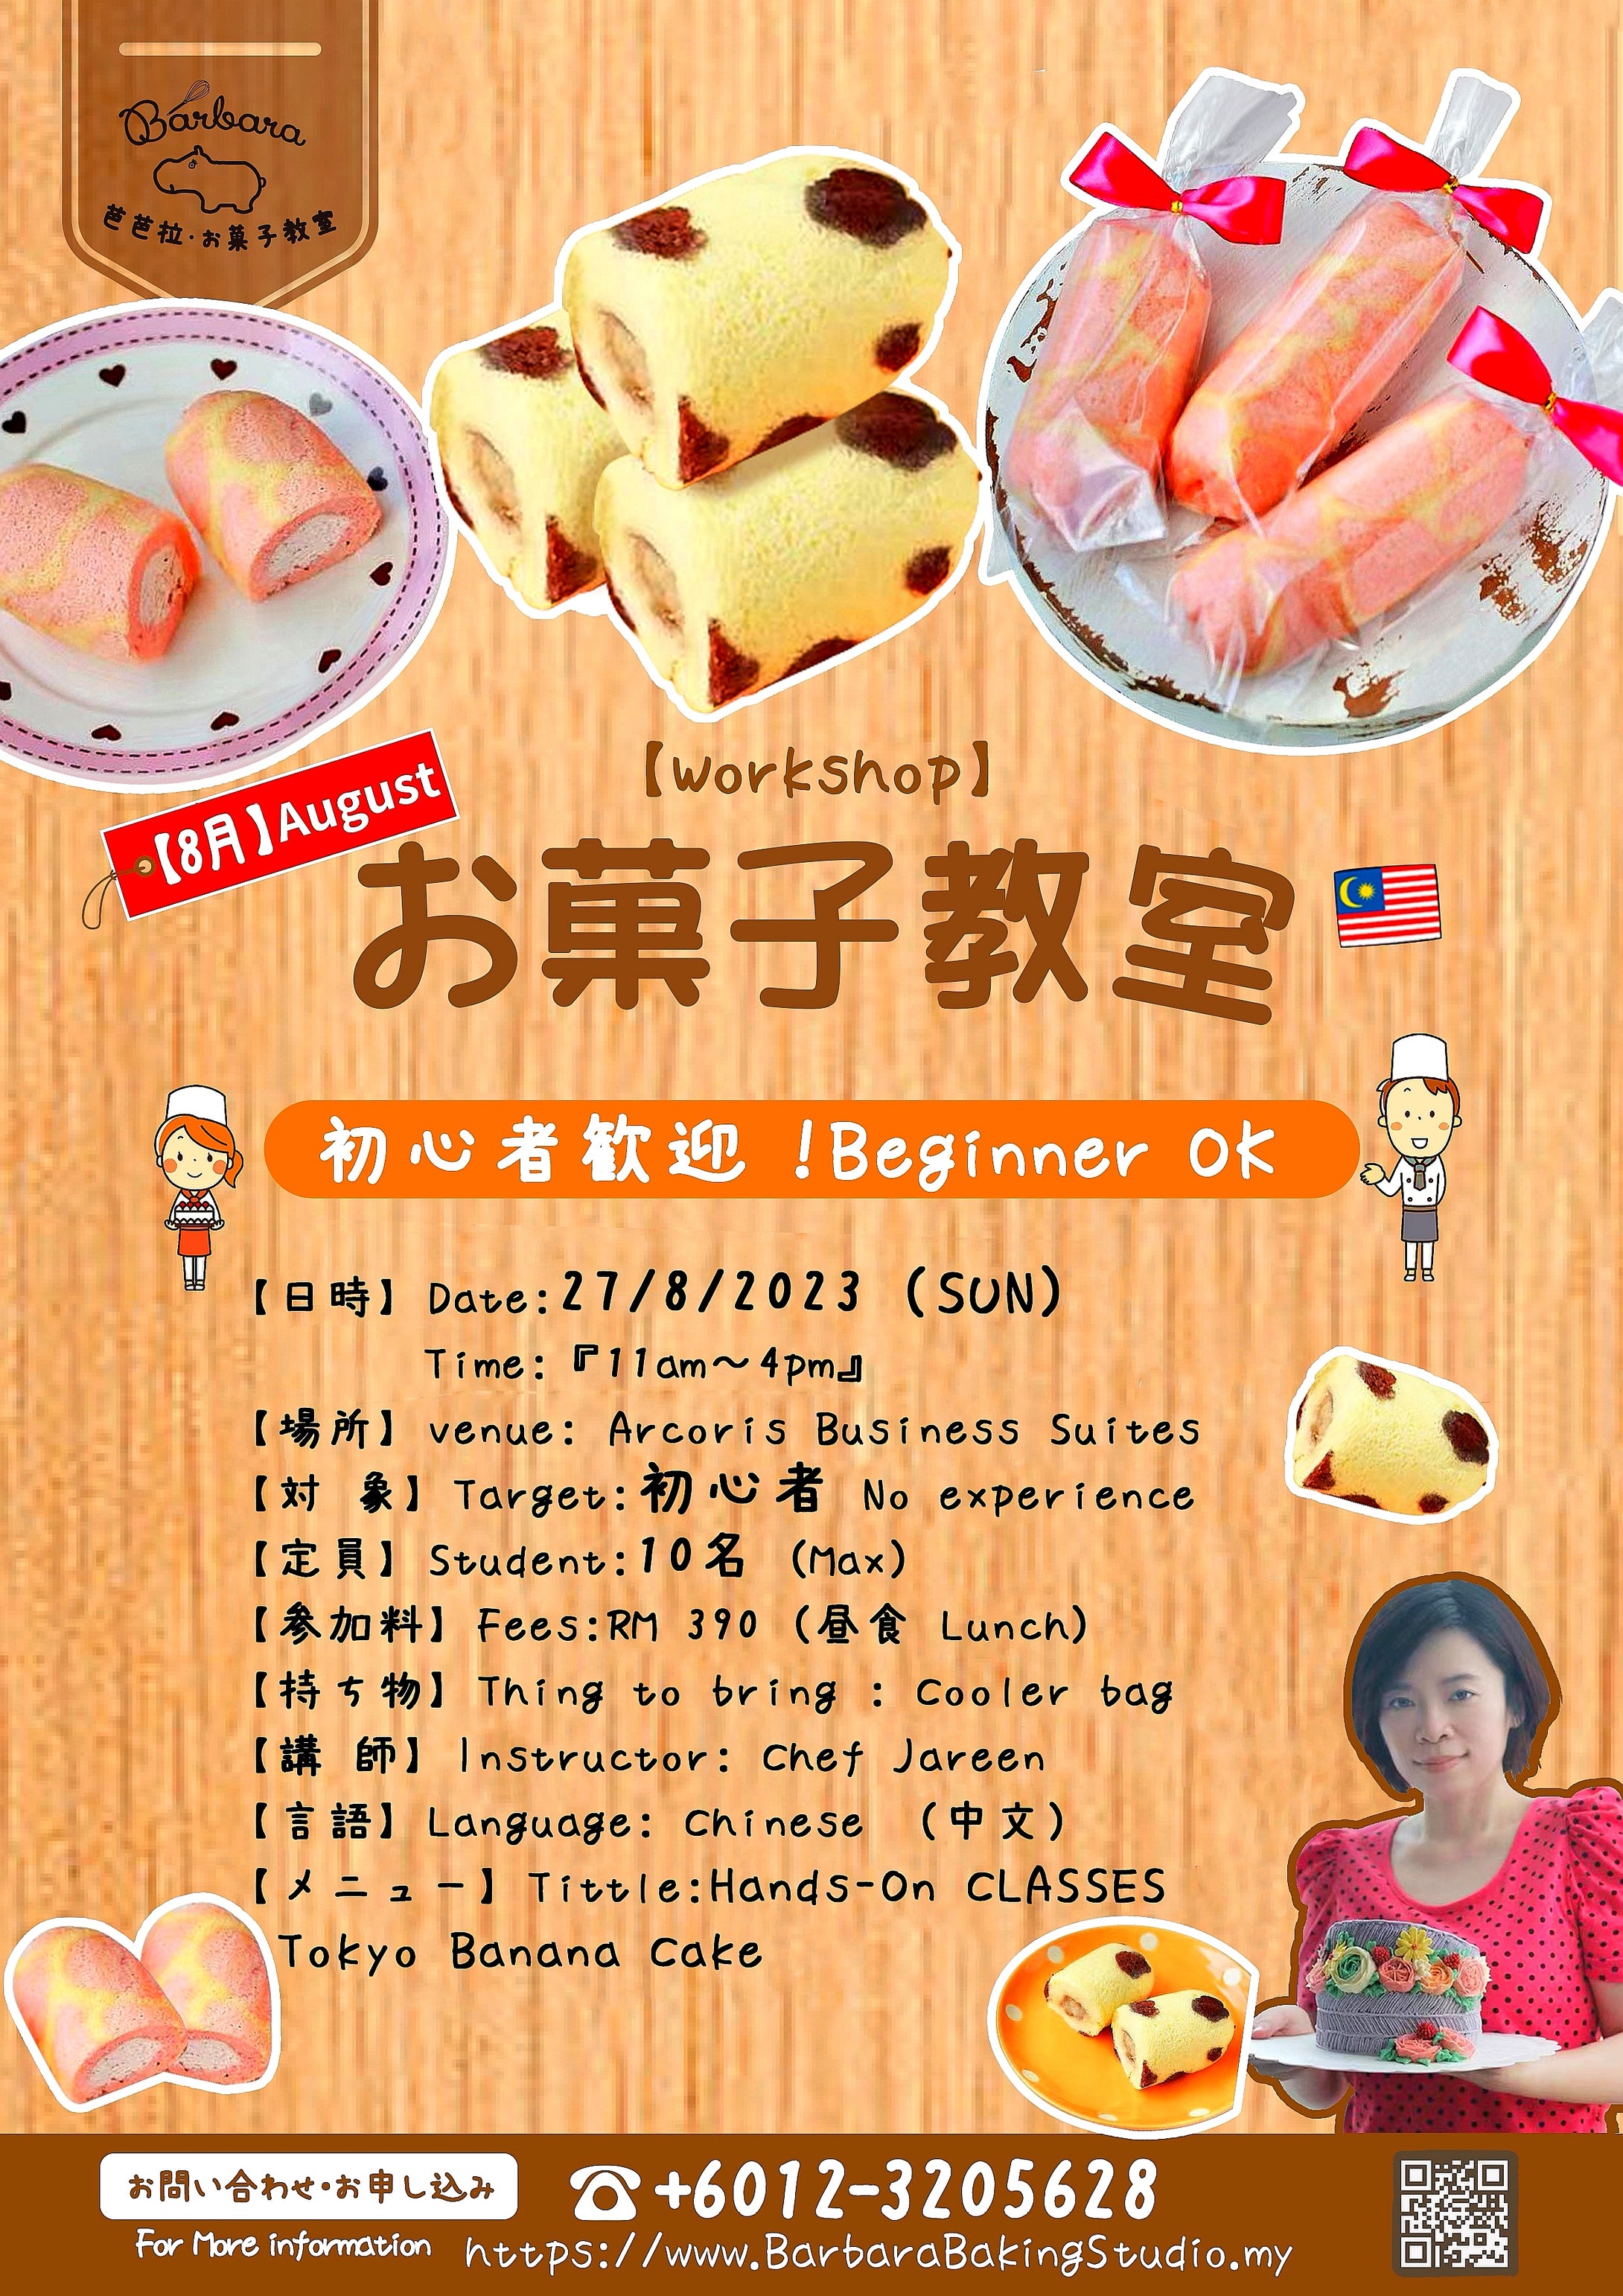 🍌东京•香蕉小蛋糕课程🍌
【 Tokyo Banane Sweets Workshop】